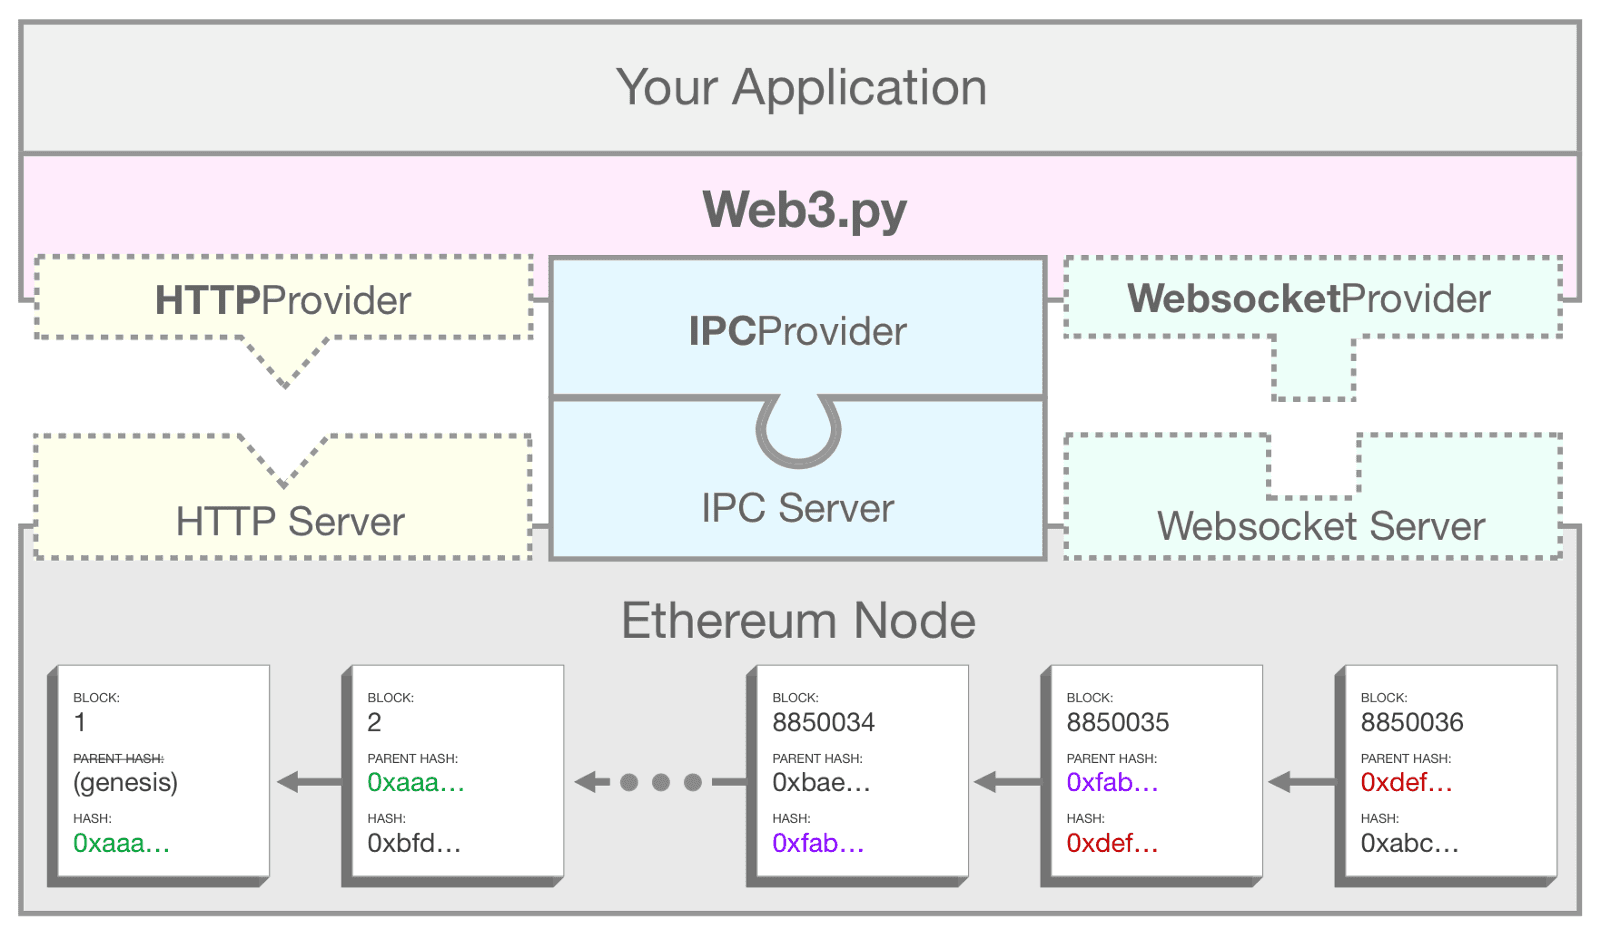 Un diagramma che mostra come web3.py utilizza IPC per collegare la tua applicazione a un nodo Ethereum